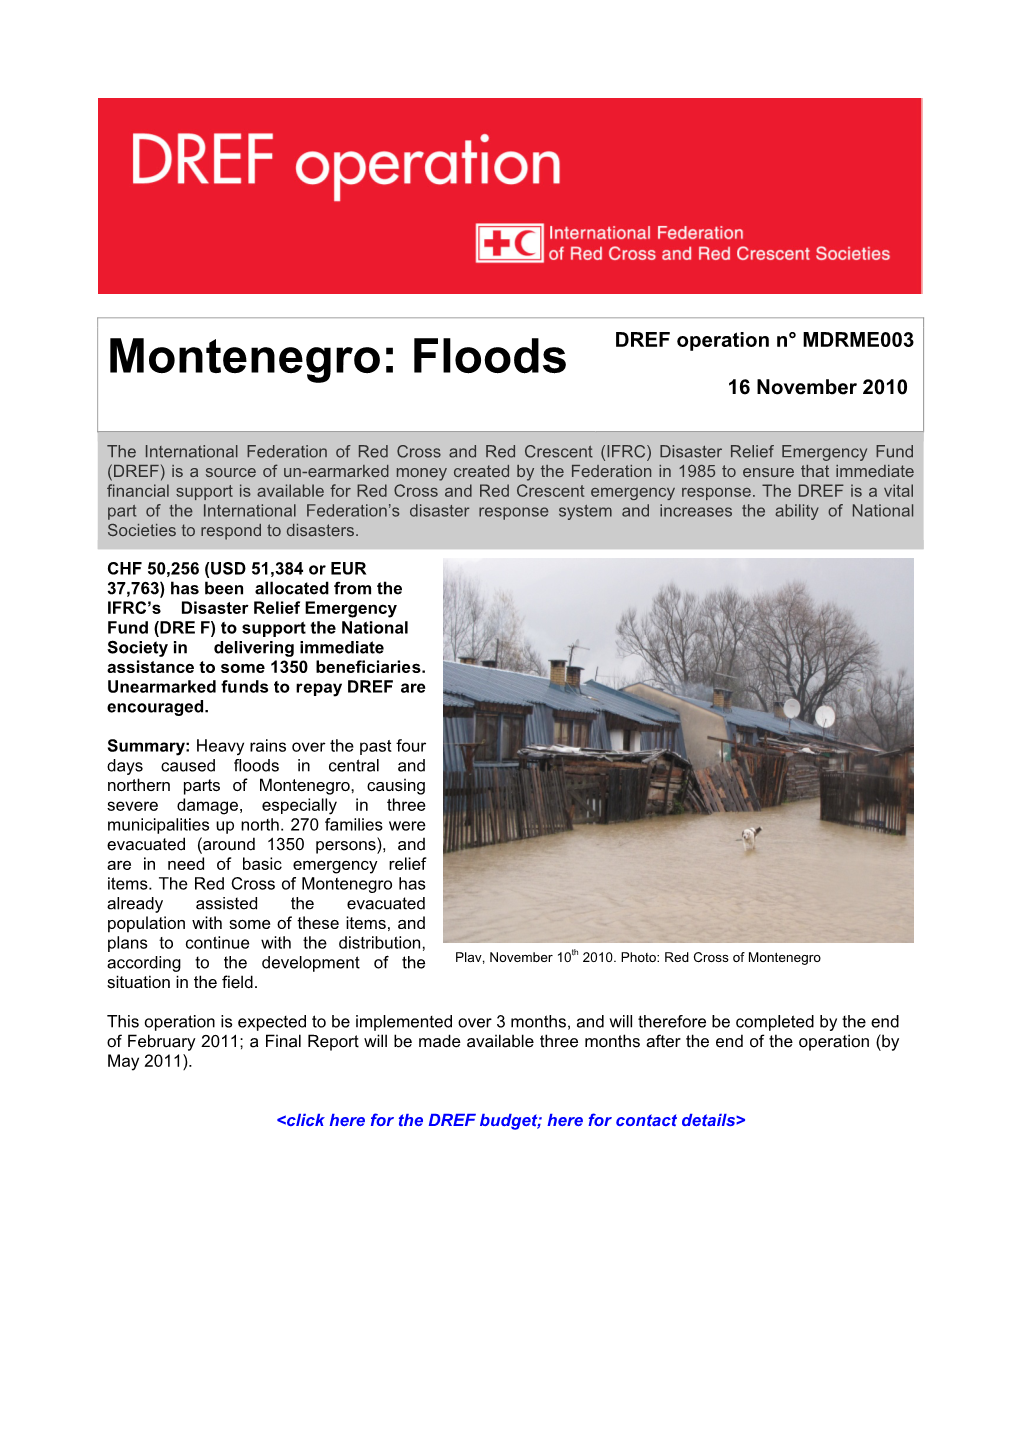 Montenegro: Floods DREF Operation N° MDRME003 16 November 2010